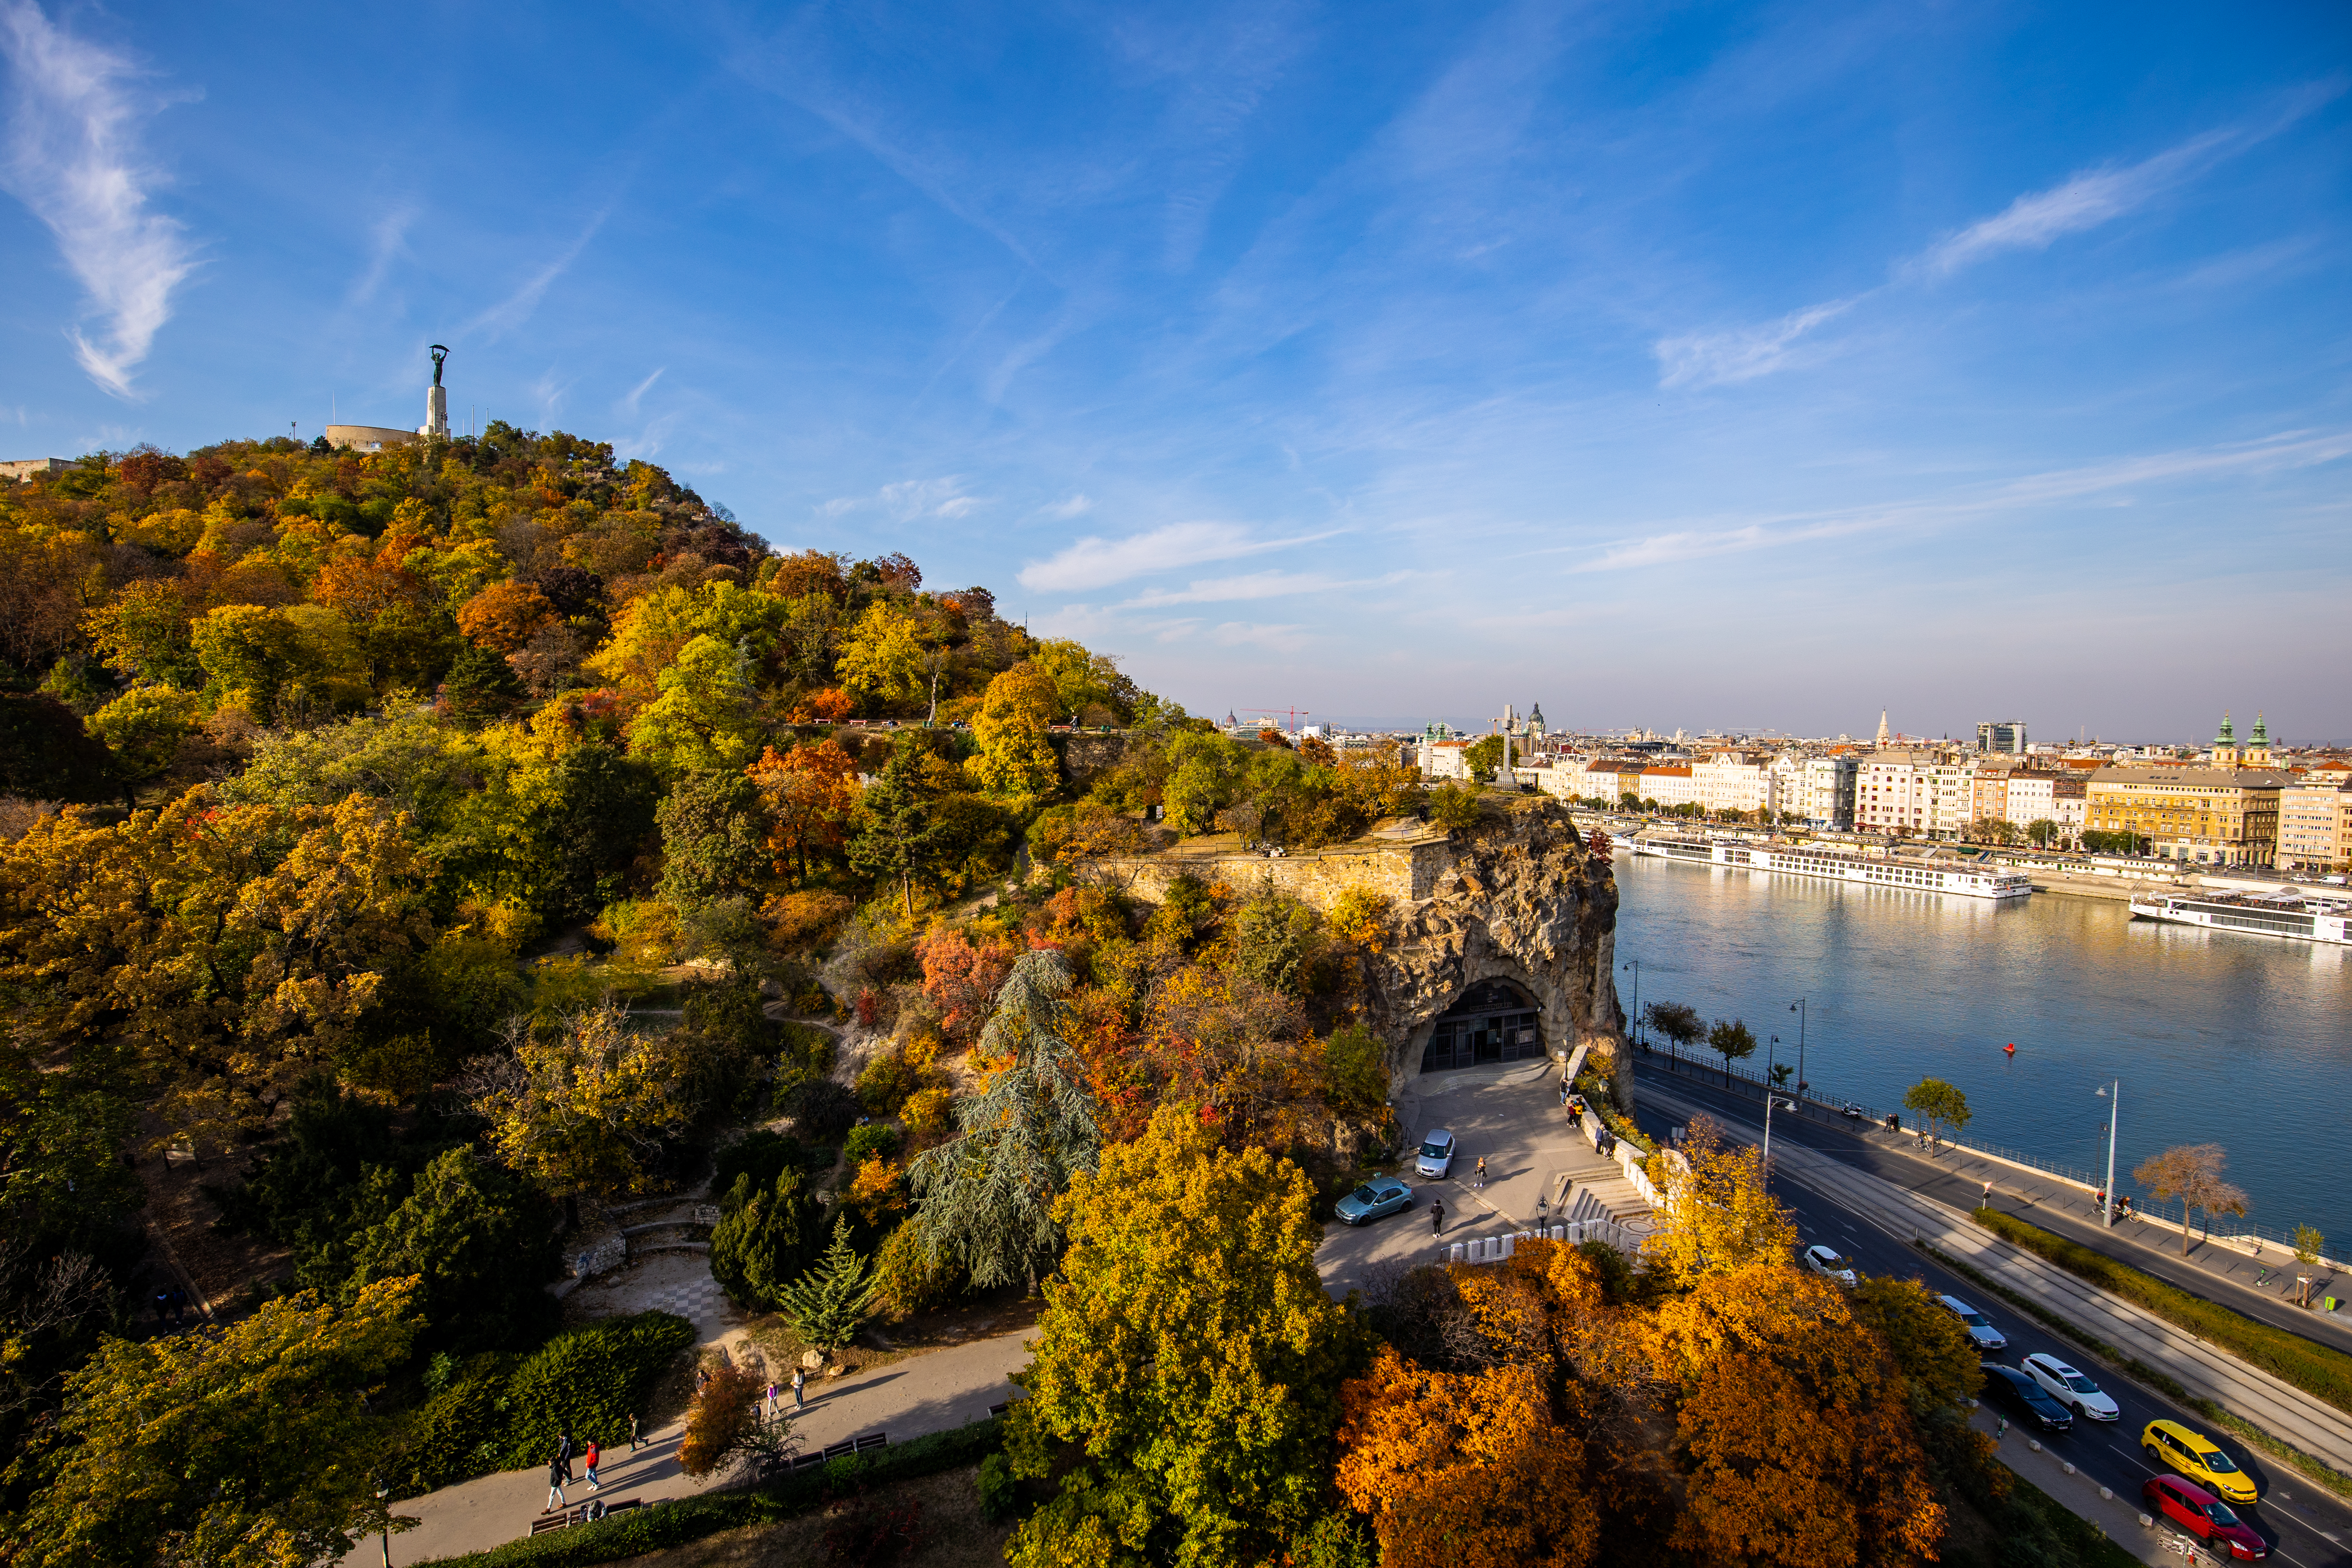 Budapest pénztárcakímélően – Ingyenes programokat ajánlunk januárra